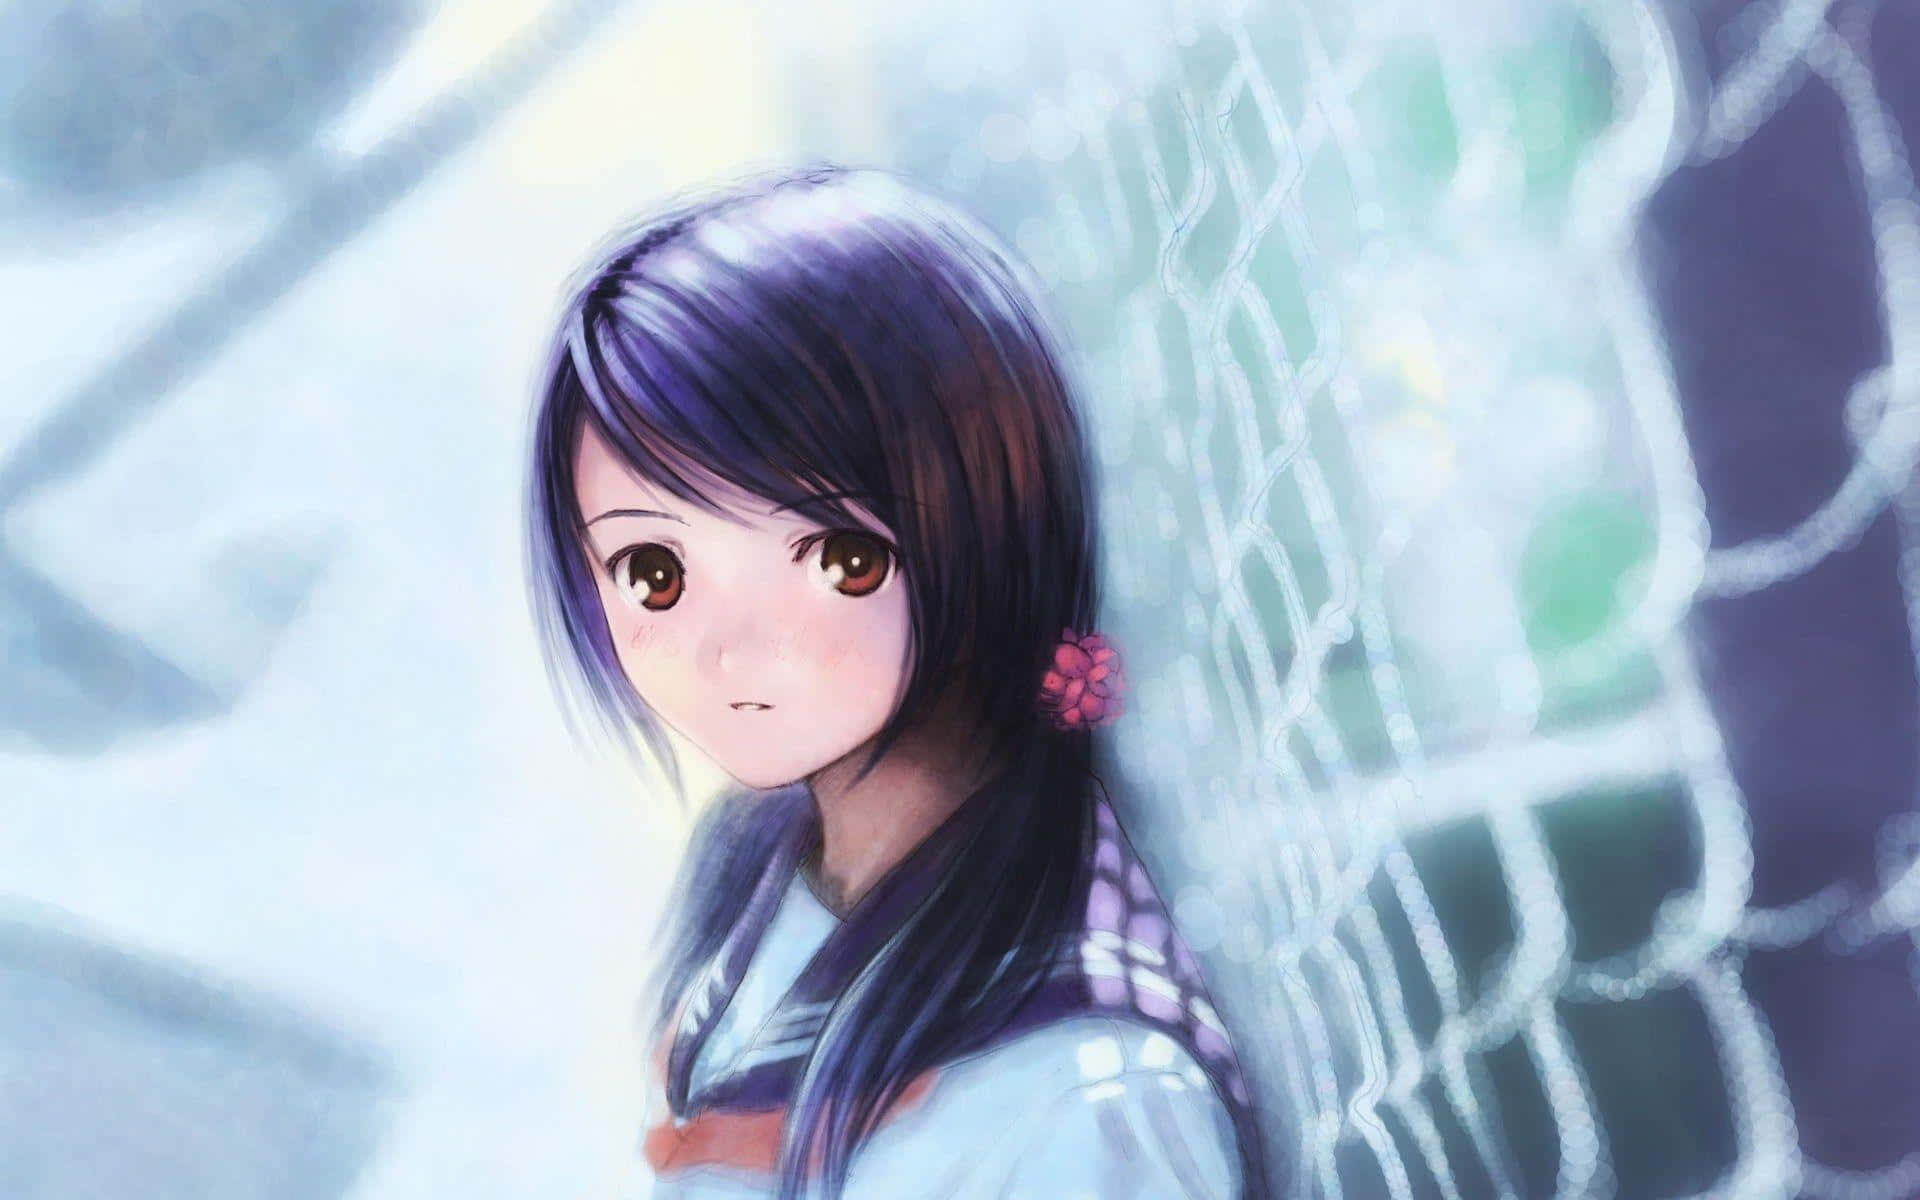 Imagemde Anime De Menina Bonita Sozinha Como Papel De Parede Para Computador Ou Celular.